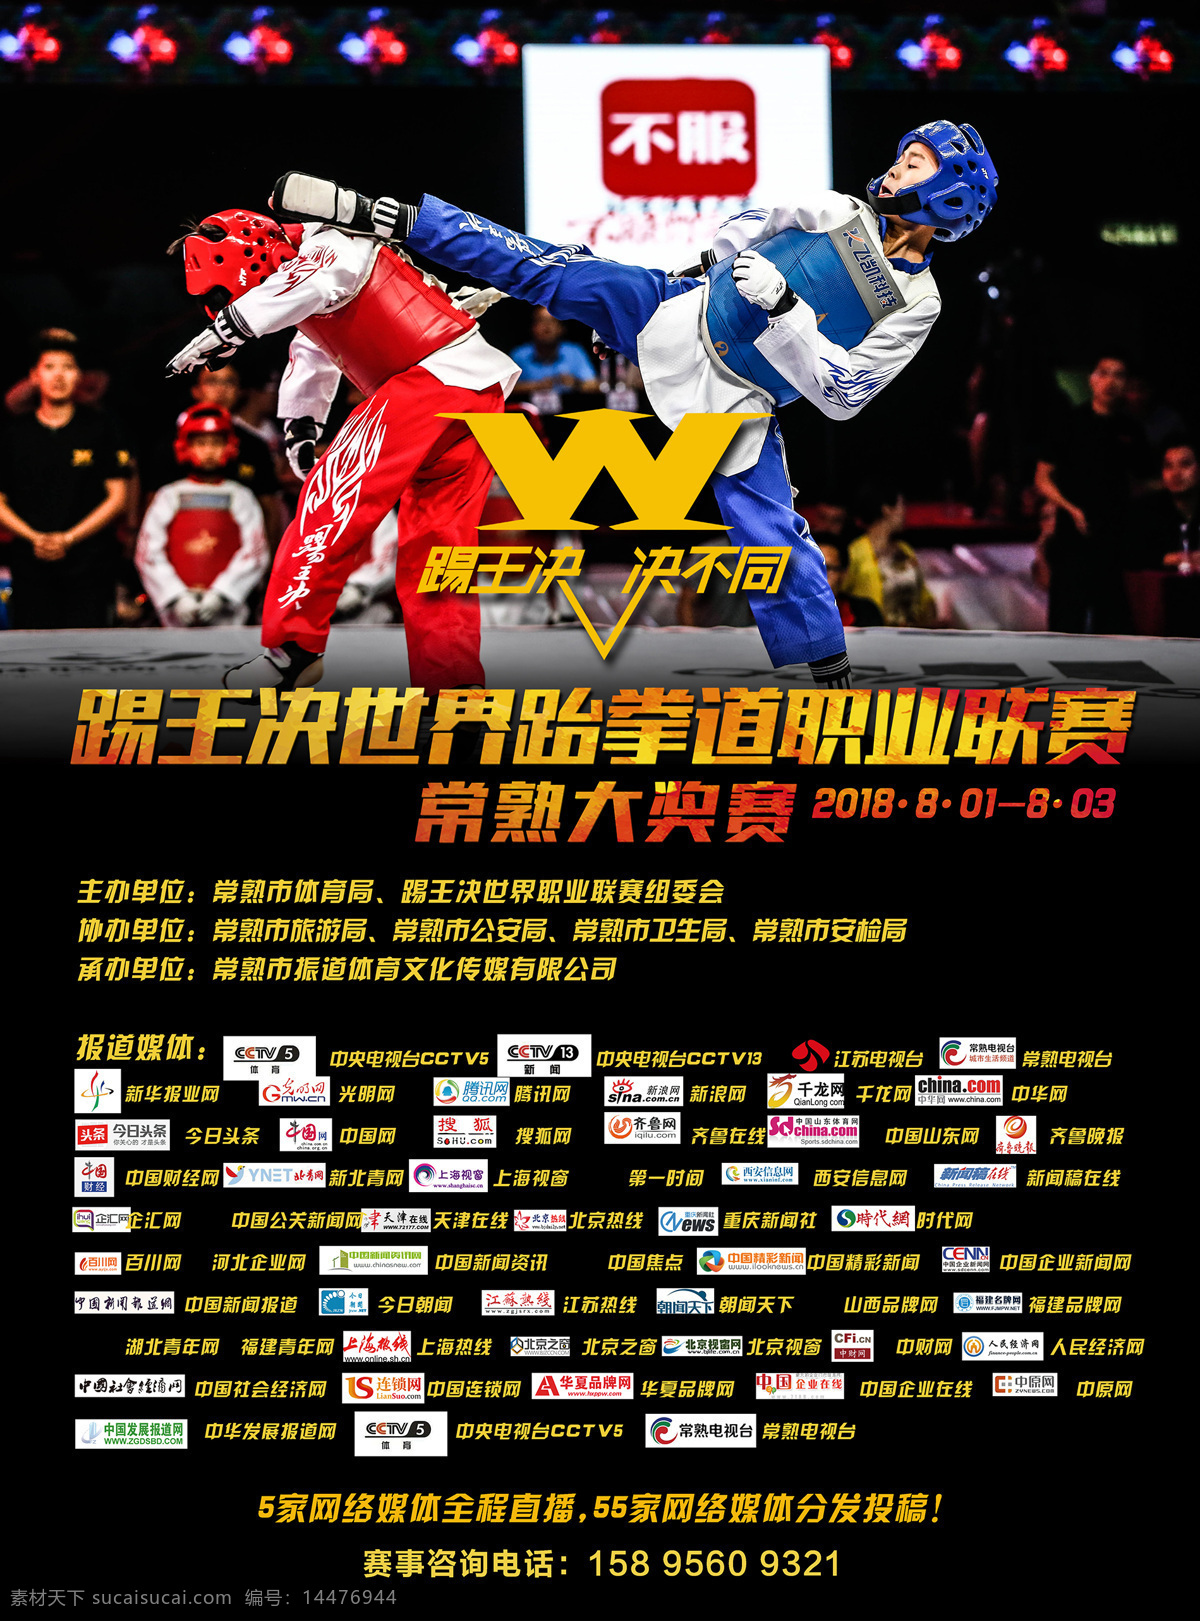 跆拳道海报 踢王 跆拳道 搏击 跆拳道比赛 室内广告设计